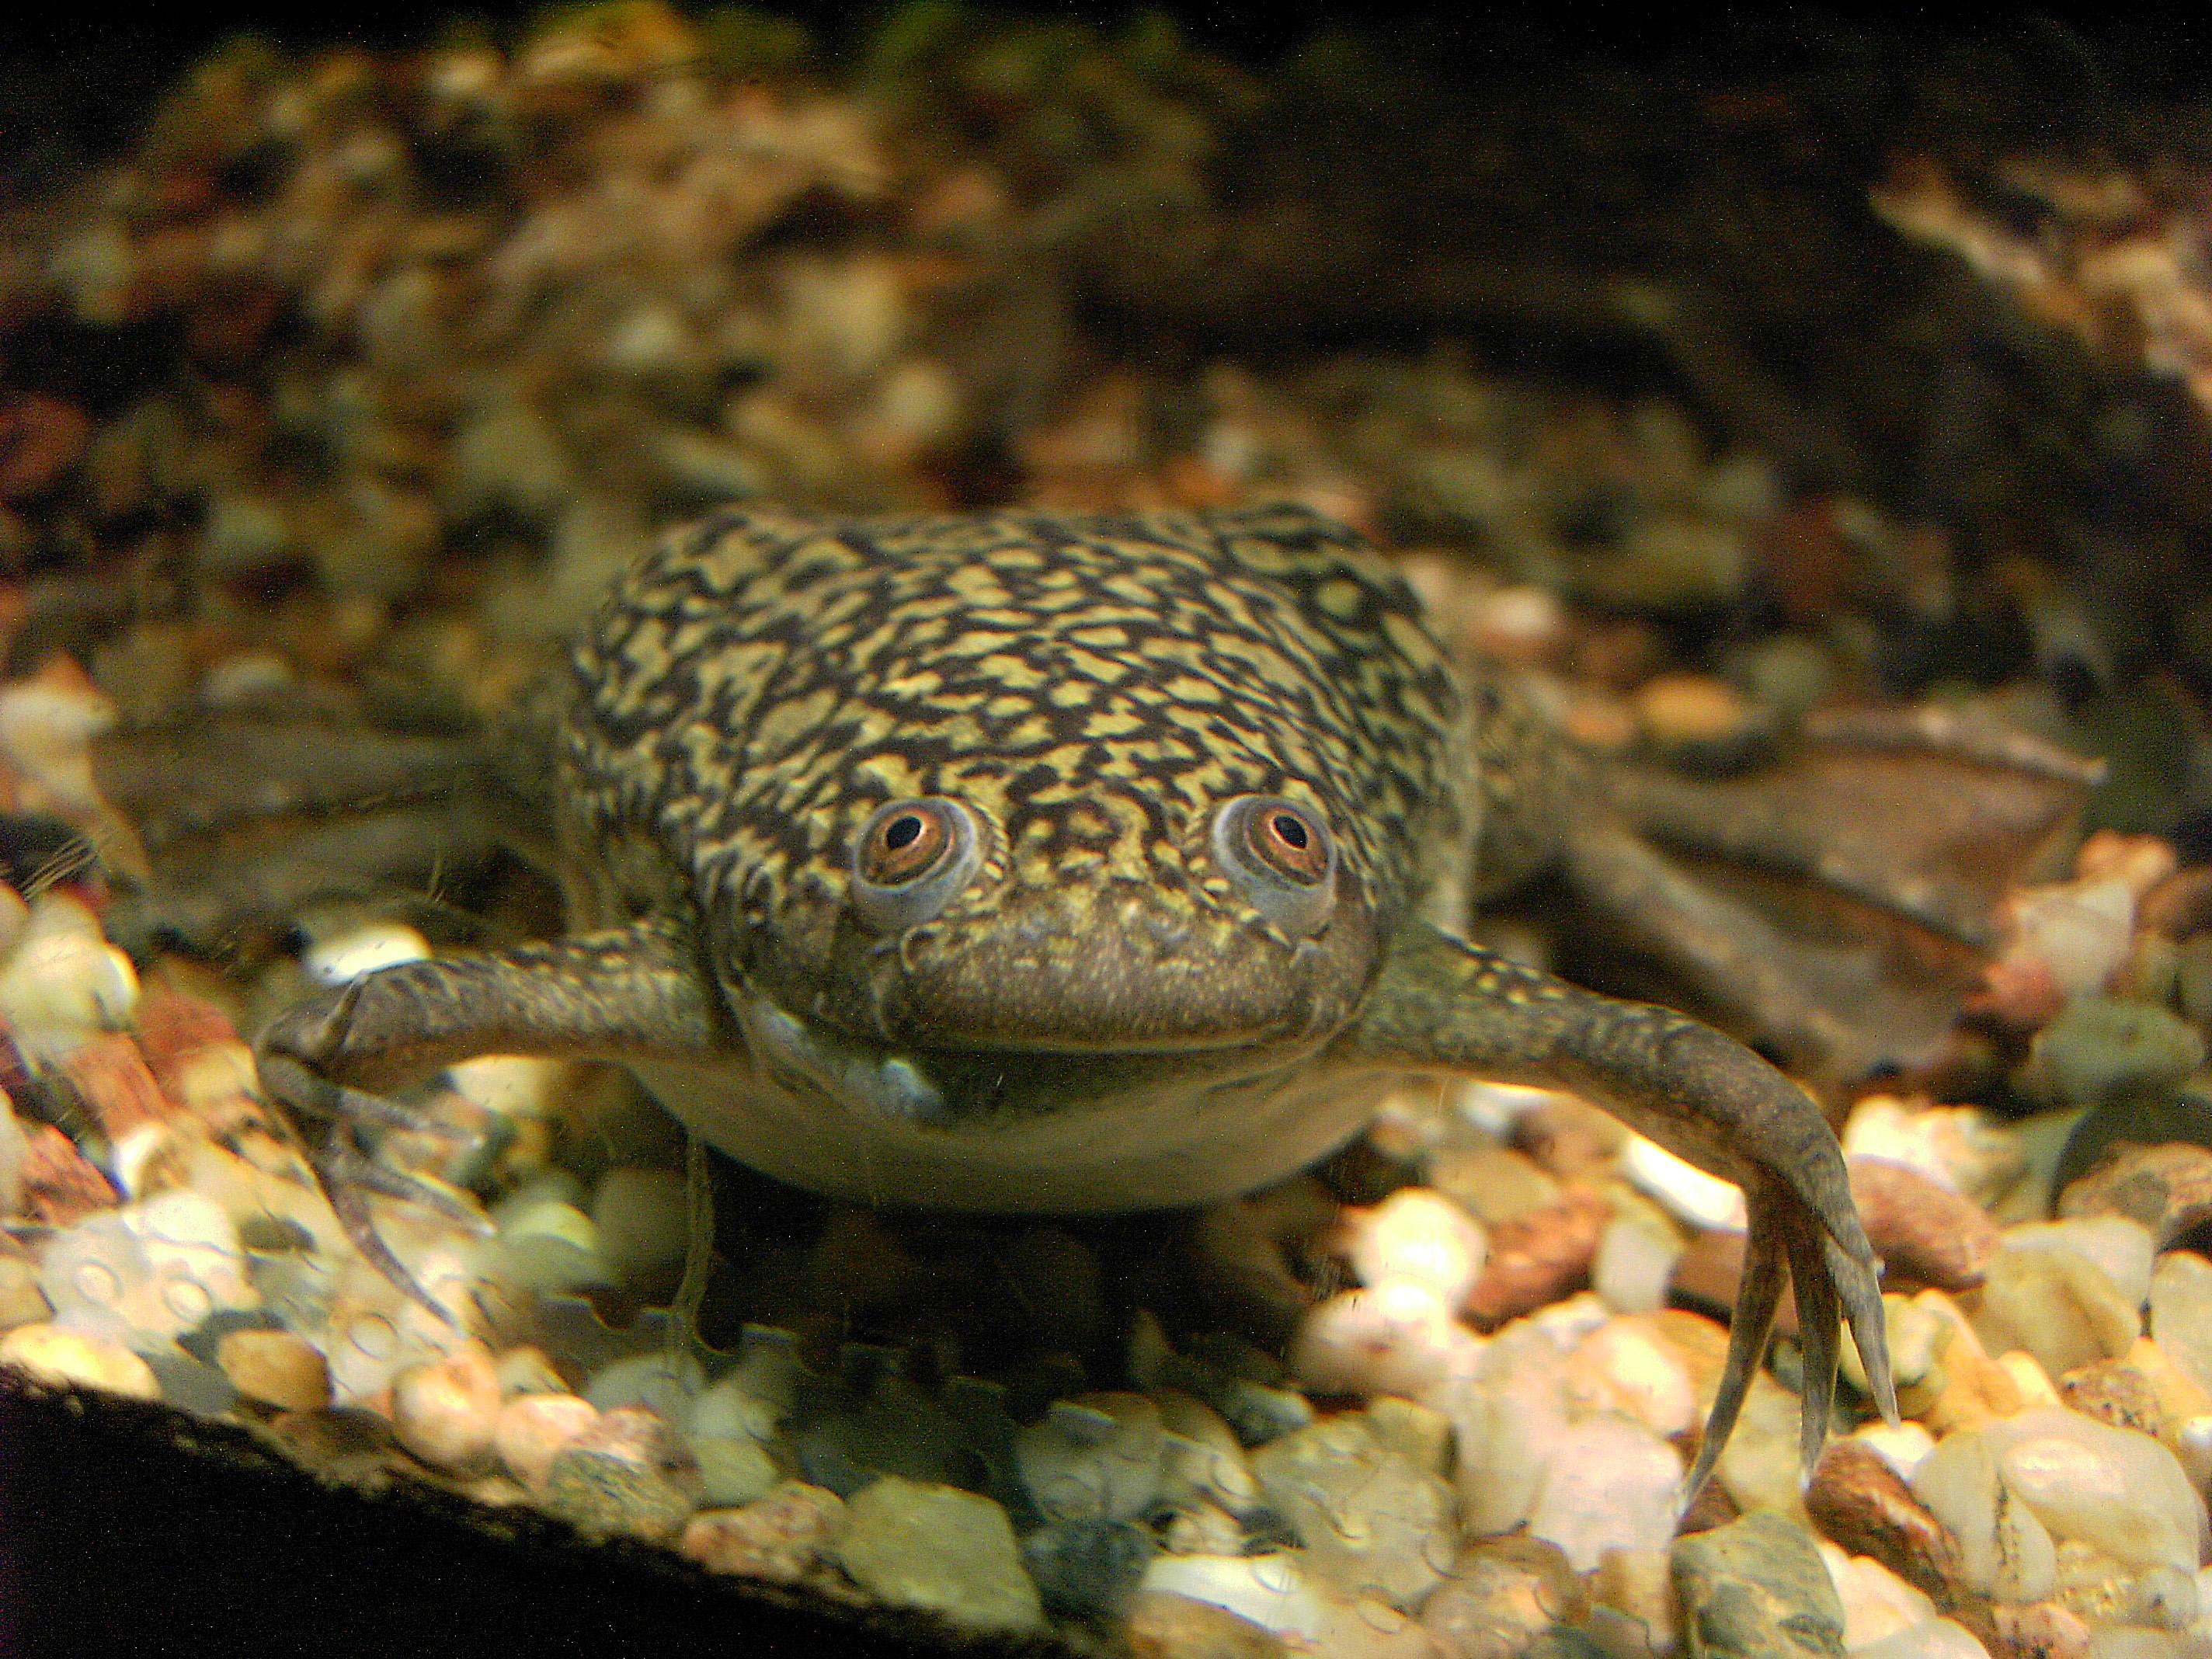 Une Xénope lisse. Les cellules souches de peau et de cœur d'embryons de cette grenouille ont servis à la fabrication du xénobot, le premier robot vivant. [CC BY 2.5 - Ben Rschr]